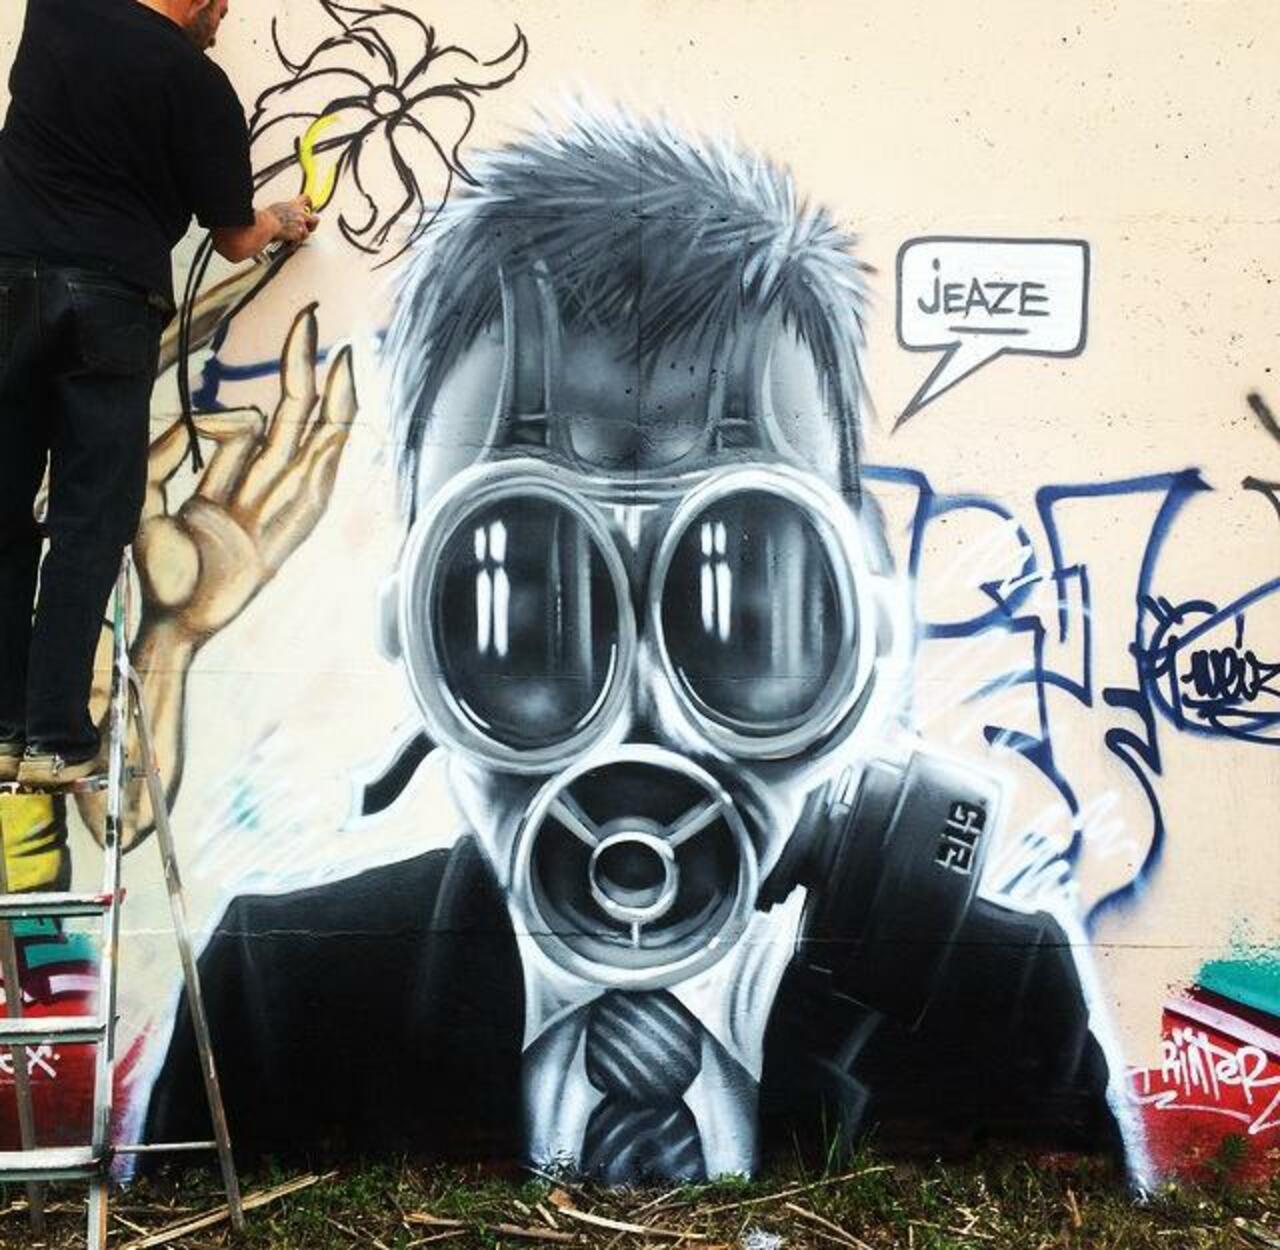 Cool Street Art by Jeaze Oner 

#art #arte #graffiti #streetart http://t.co/o3tDV4J9Wx